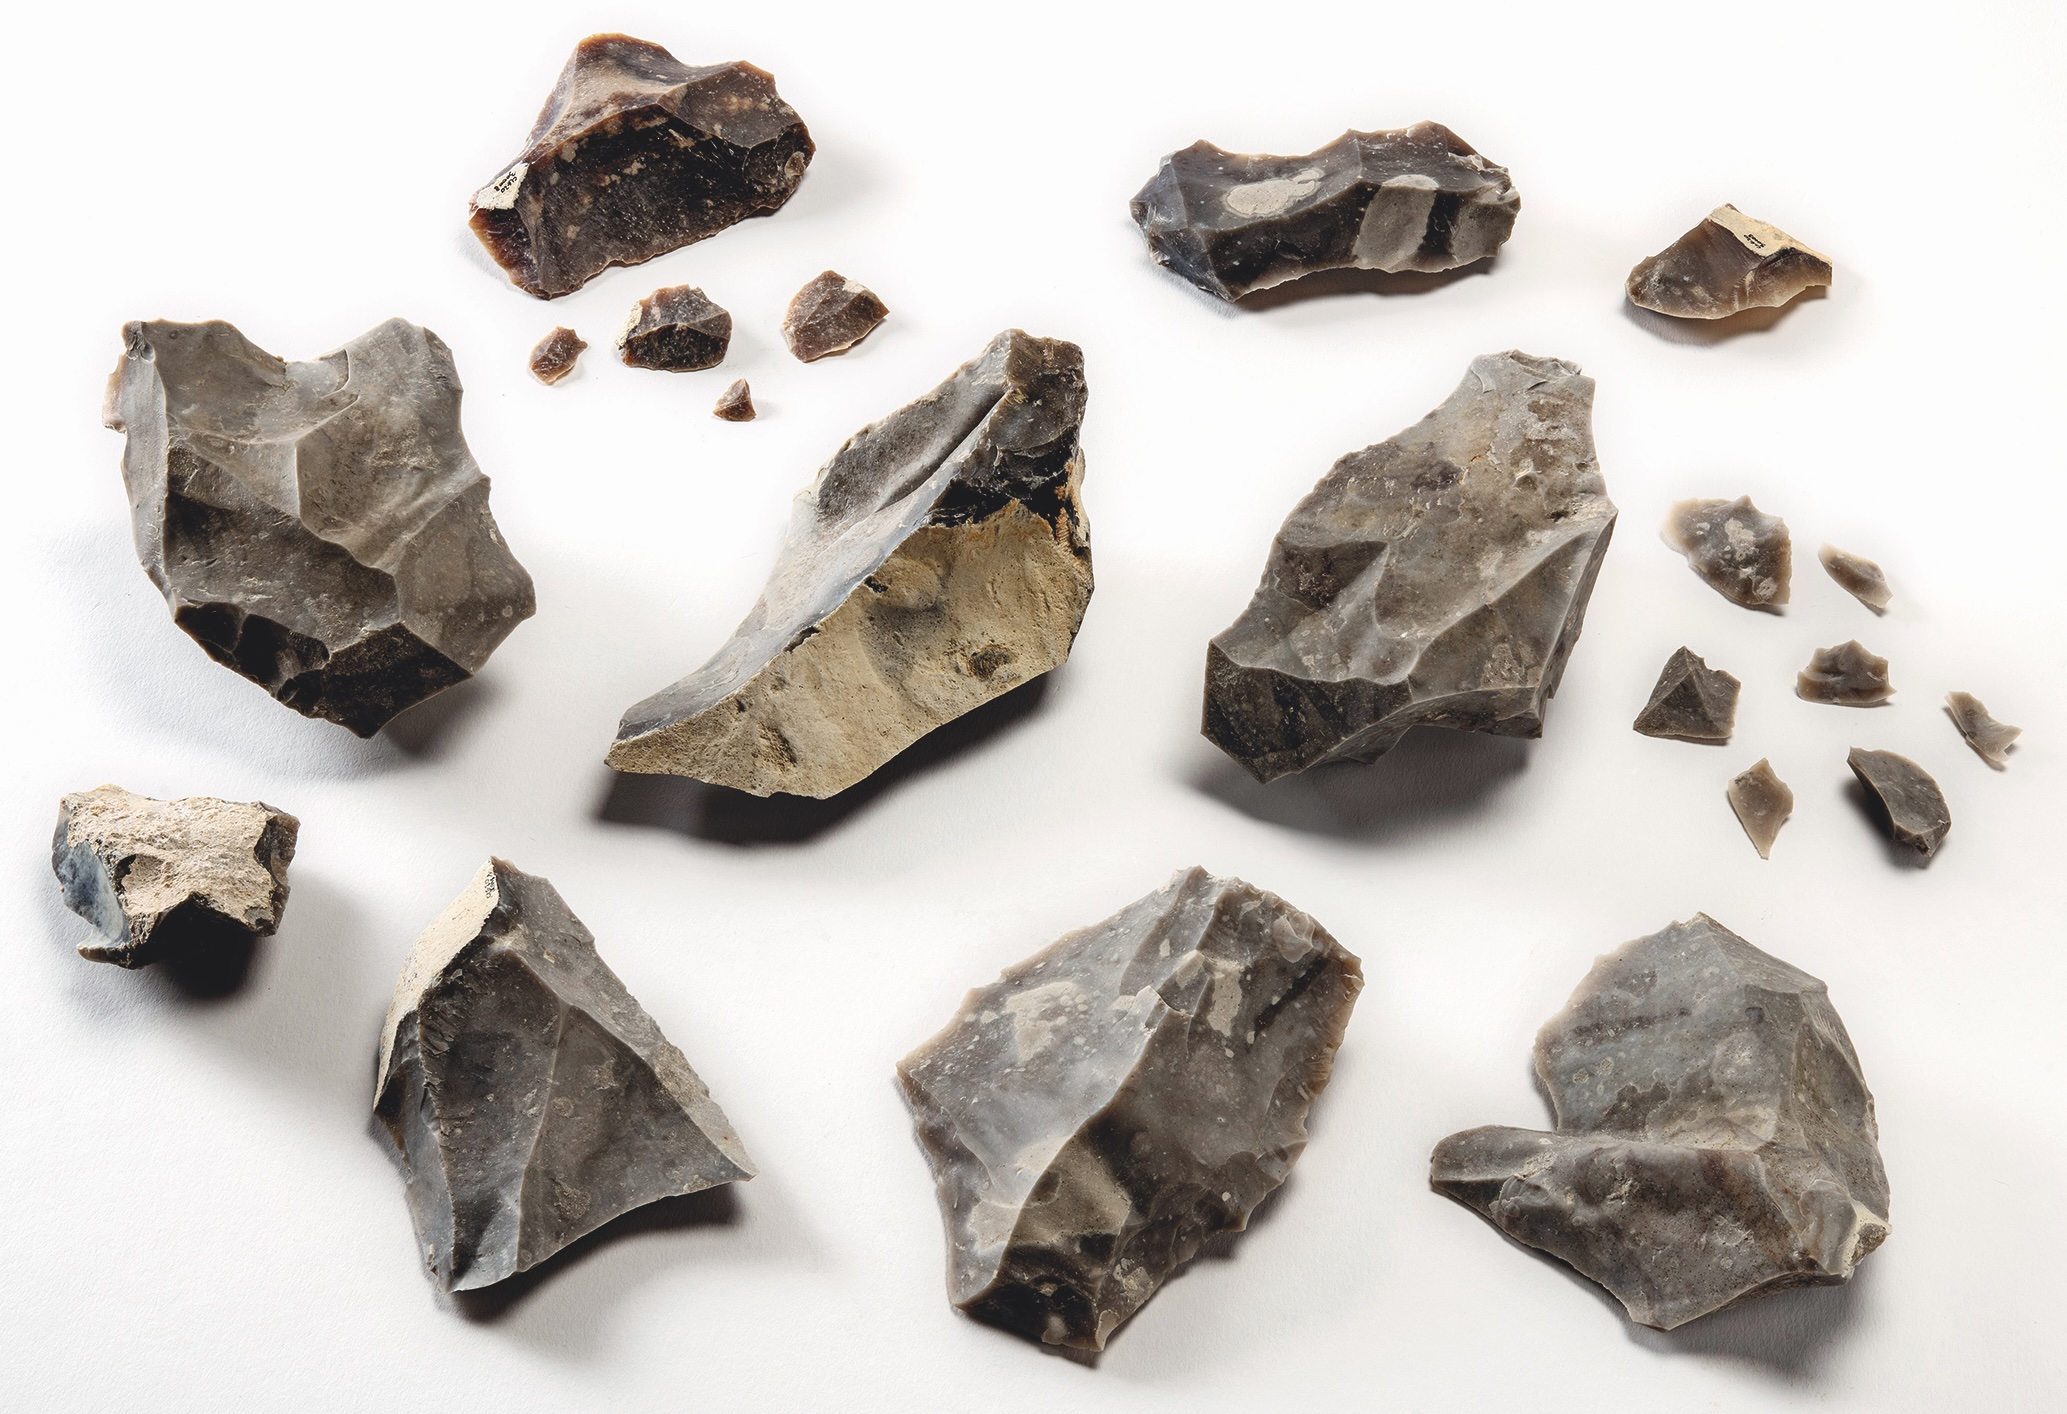 Ensemble d’outils en silex retrouvés sur le site de Clichy-la-Garenne en octobre 2020. Paléolithique moyen. © Denis Glicksmann, Inrap